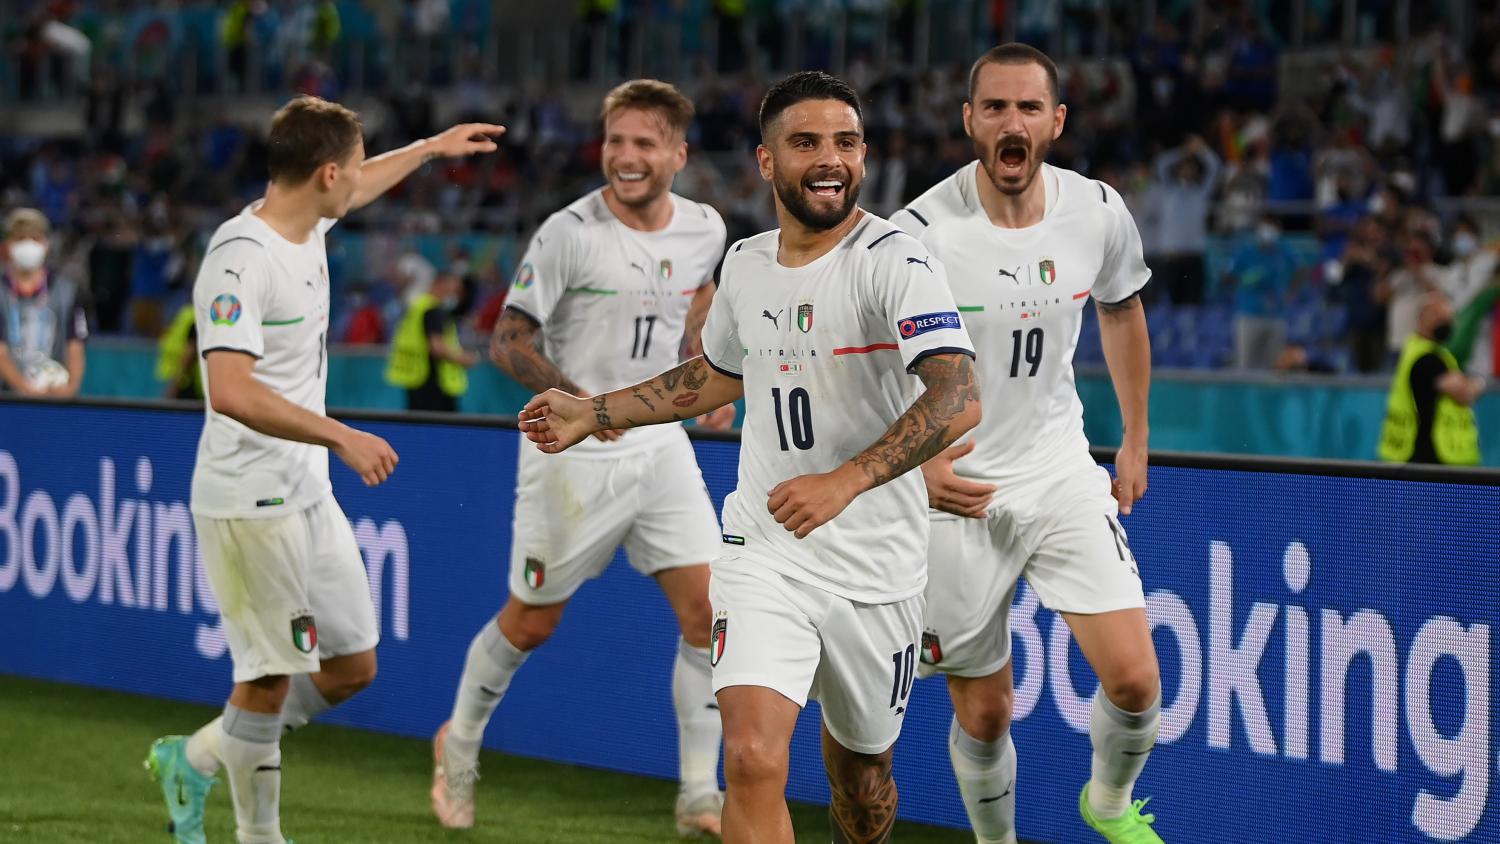 Render miles Pickering Italy vs Turkey Highlights Euro 2020 — Azzurri Fly To 3-0 Win